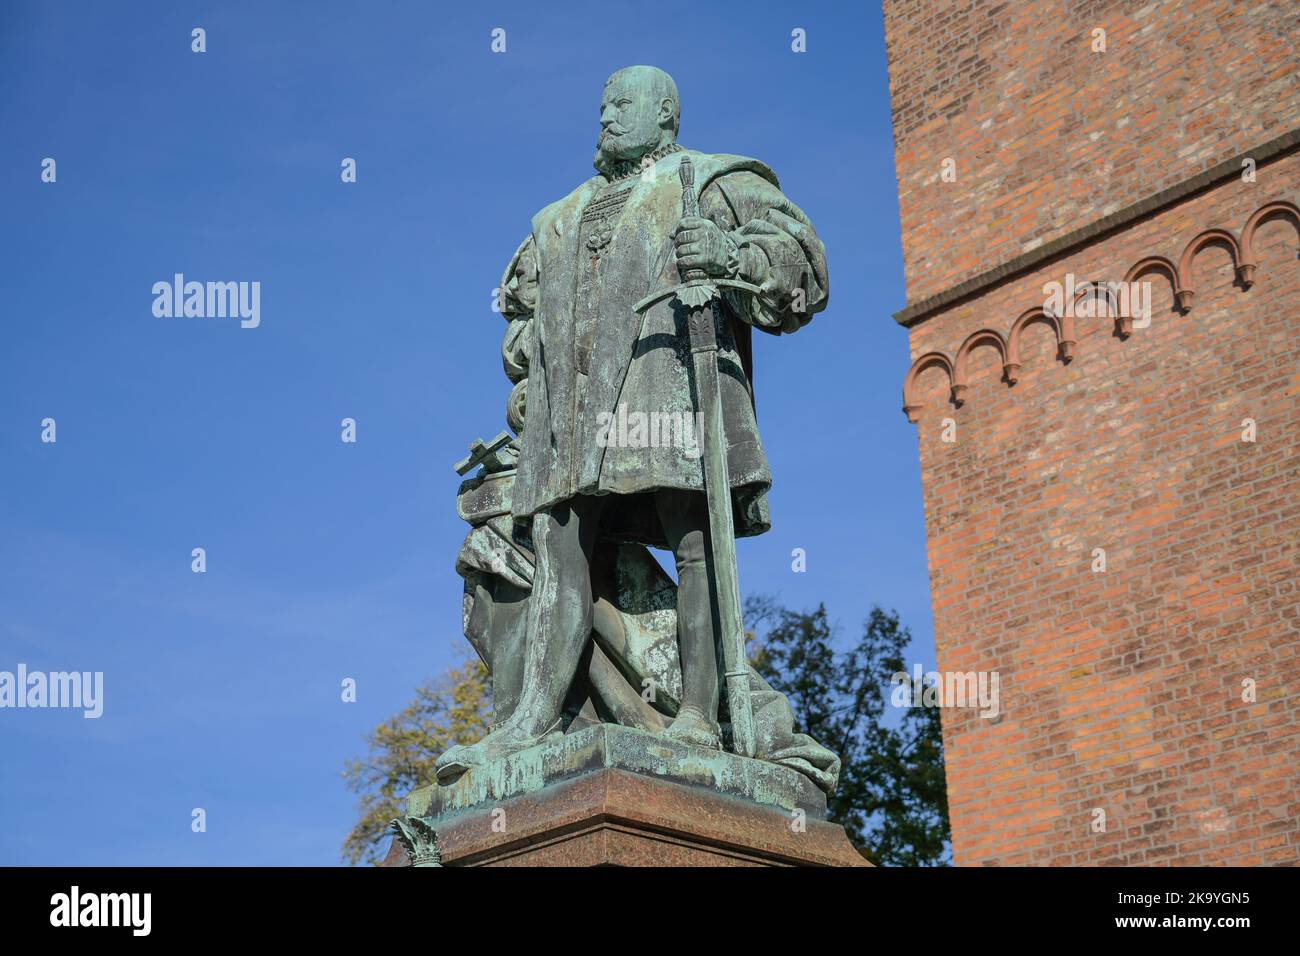 Denkmal Kurfürst Joachim II., Reformationsplatz, Altstadt, Spandau, Berlin, Deutschland Stock Photo